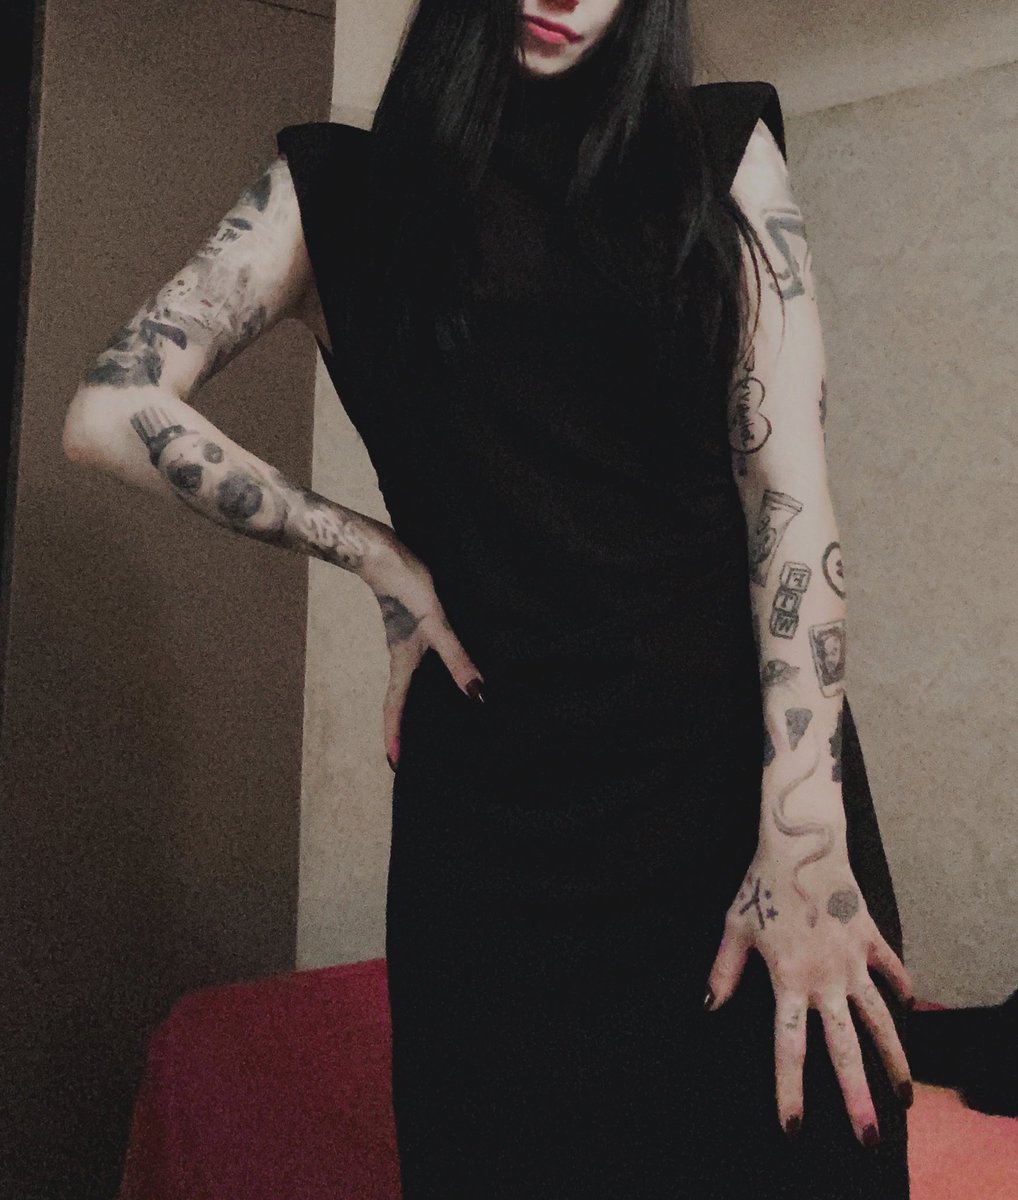 tattoo増やしたいなぁ🤤

今日暇すぎて死にそう=͟͞͞('､3)_ヽ)＿

 #tattoo  #タトゥー #tattoolife  #タトゥー女子